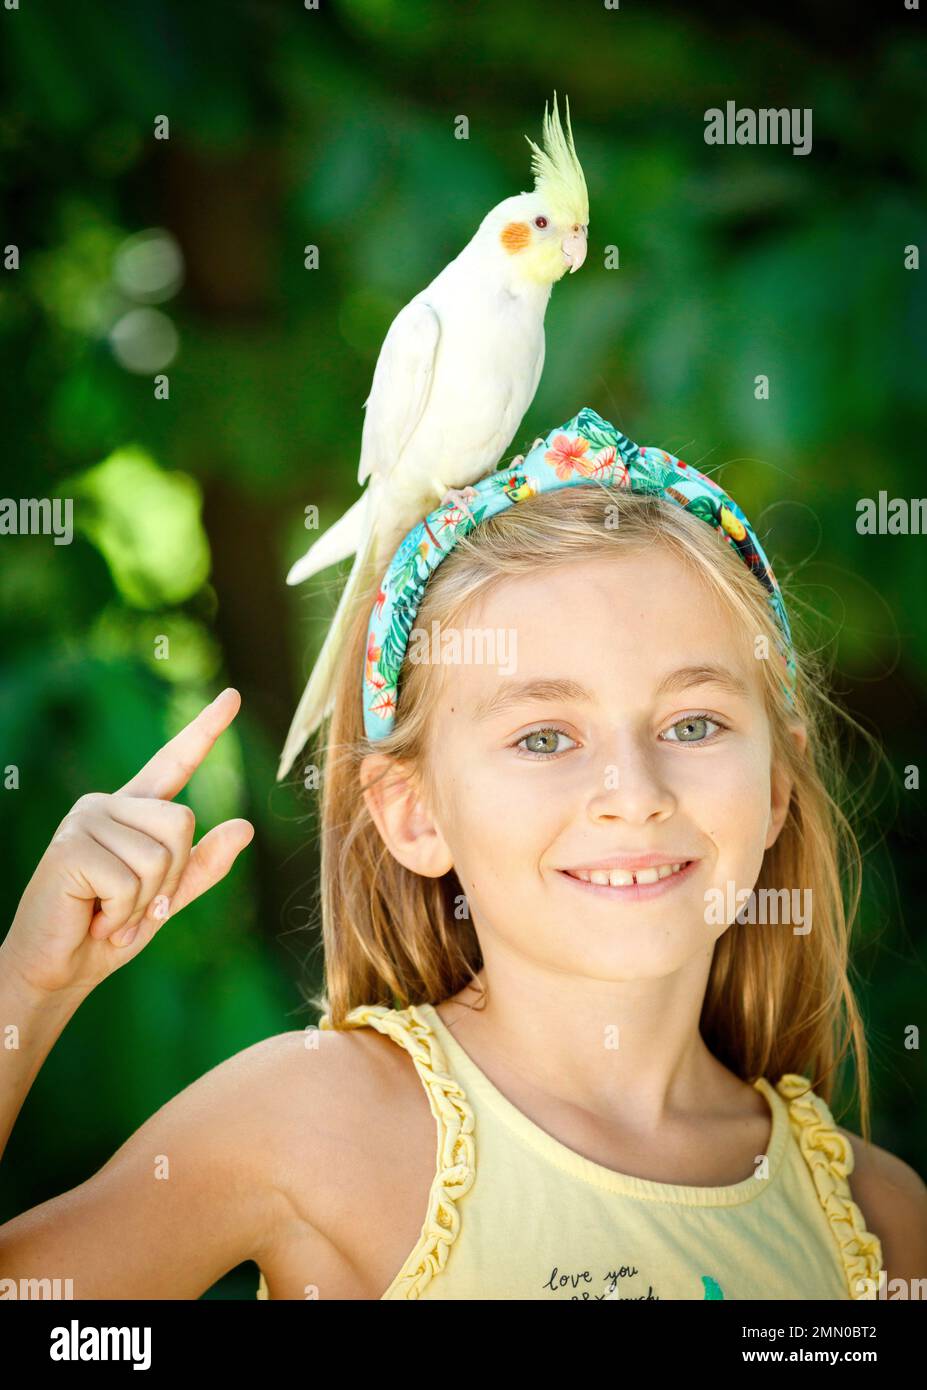 Francia, Haute Garonne, Plaisance du Touch, Zoo Africano, ritratto di una giovane ragazza turista in uno zoo in estate con un uccello sulla sua testa Foto Stock